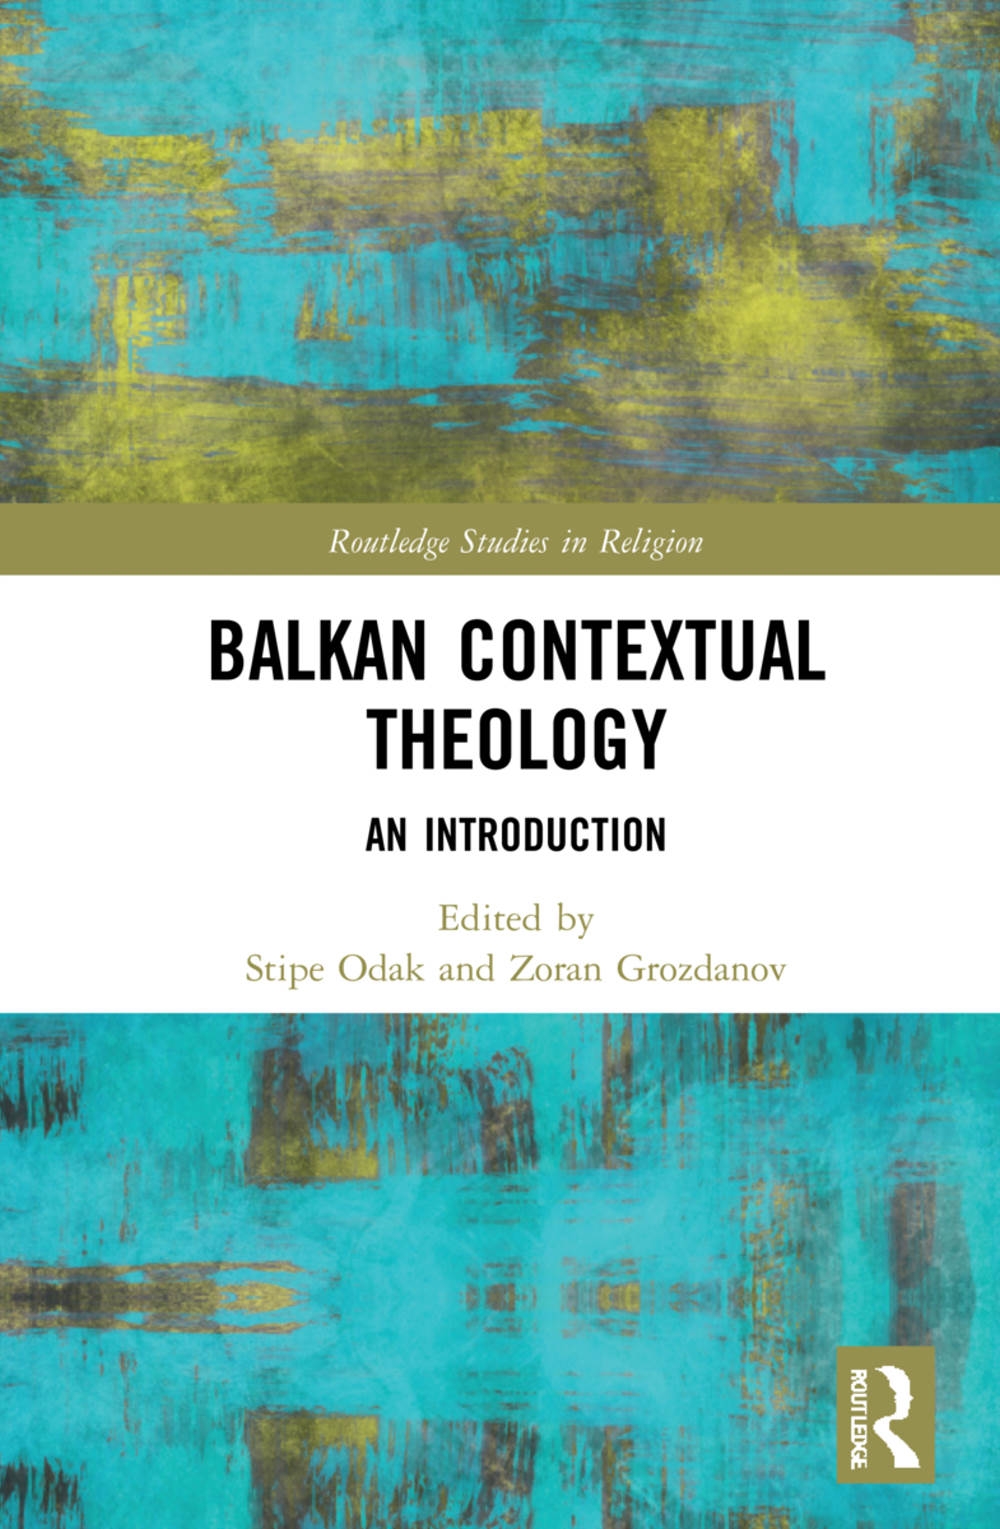 Balkan Contextual Theology: An Introduction